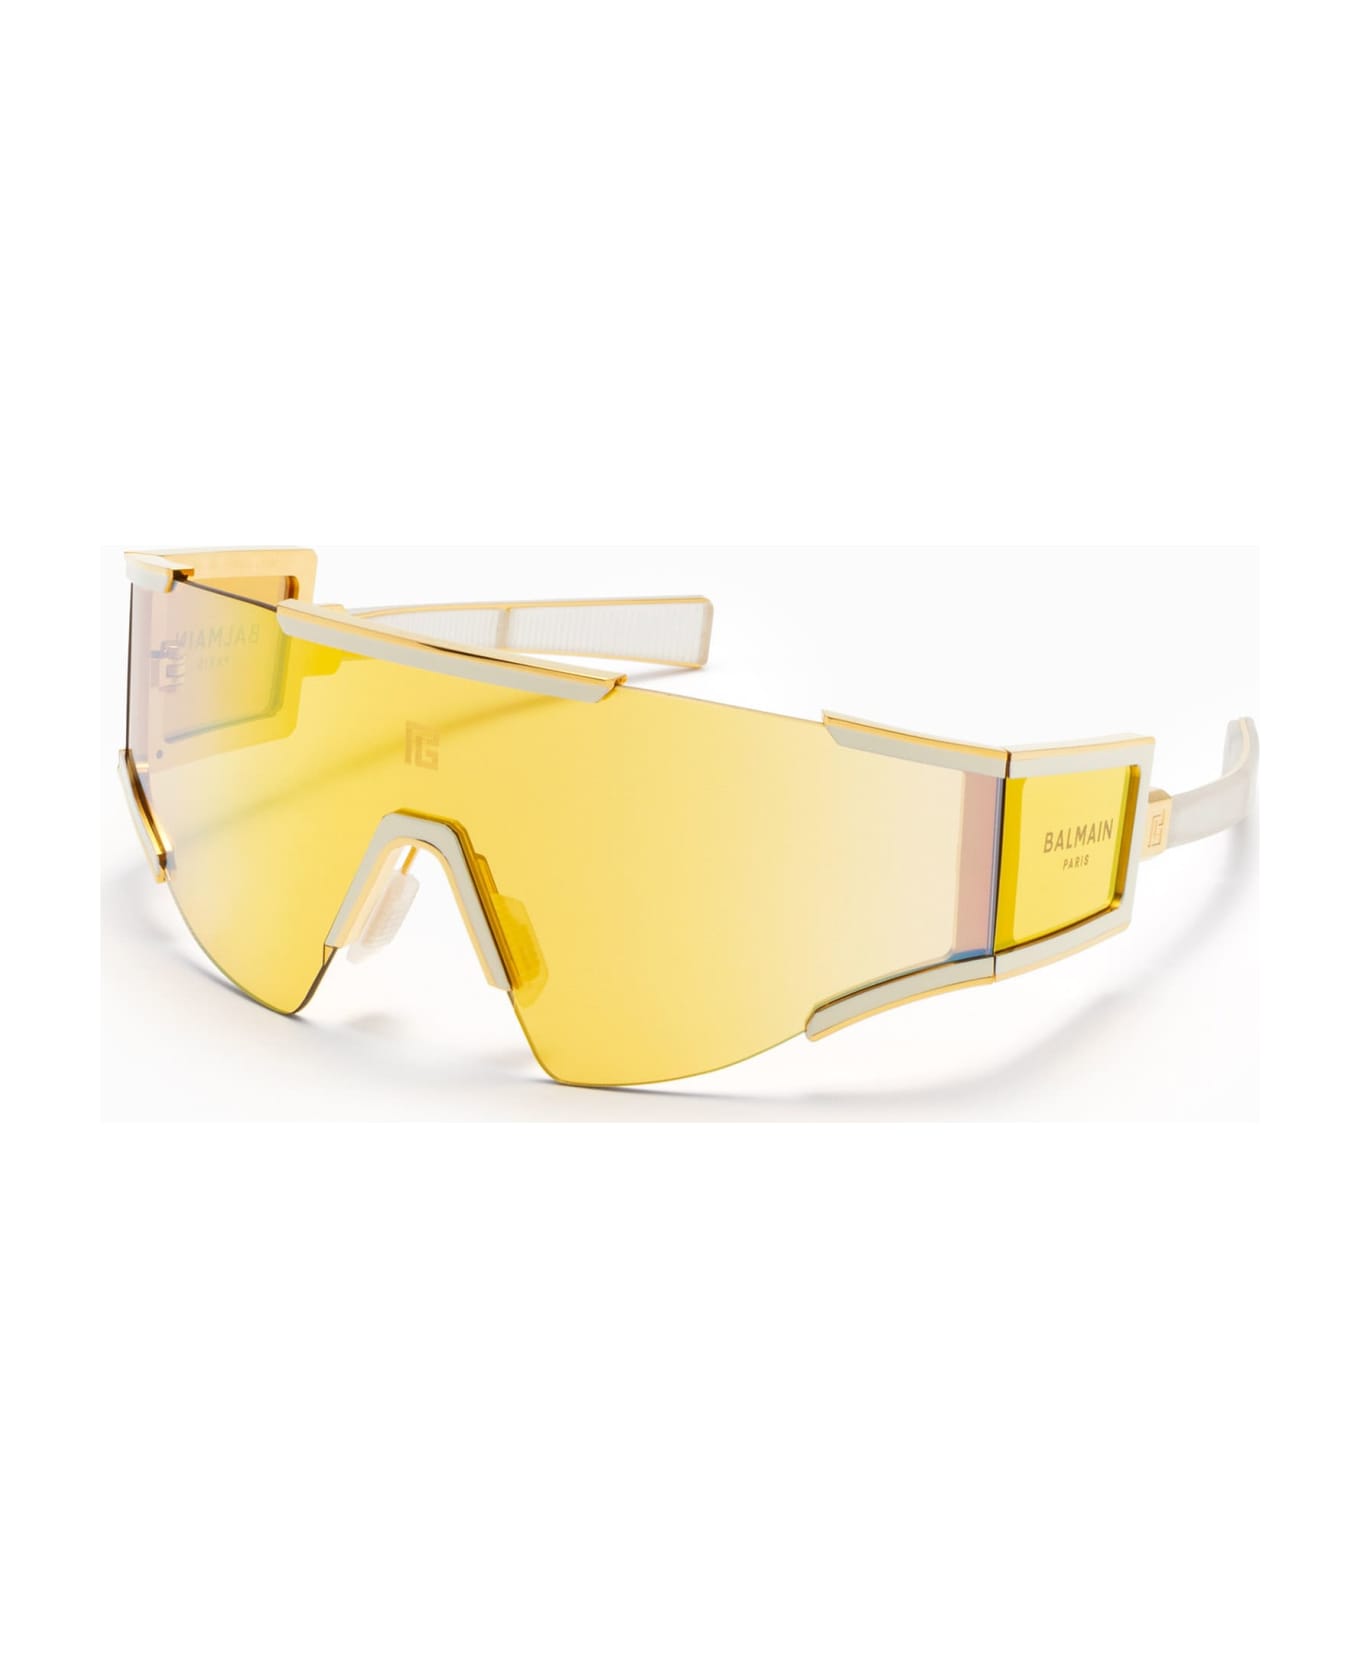 Balmain Fleche - Gold / Bone Sunglasses - Gold/White サングラス